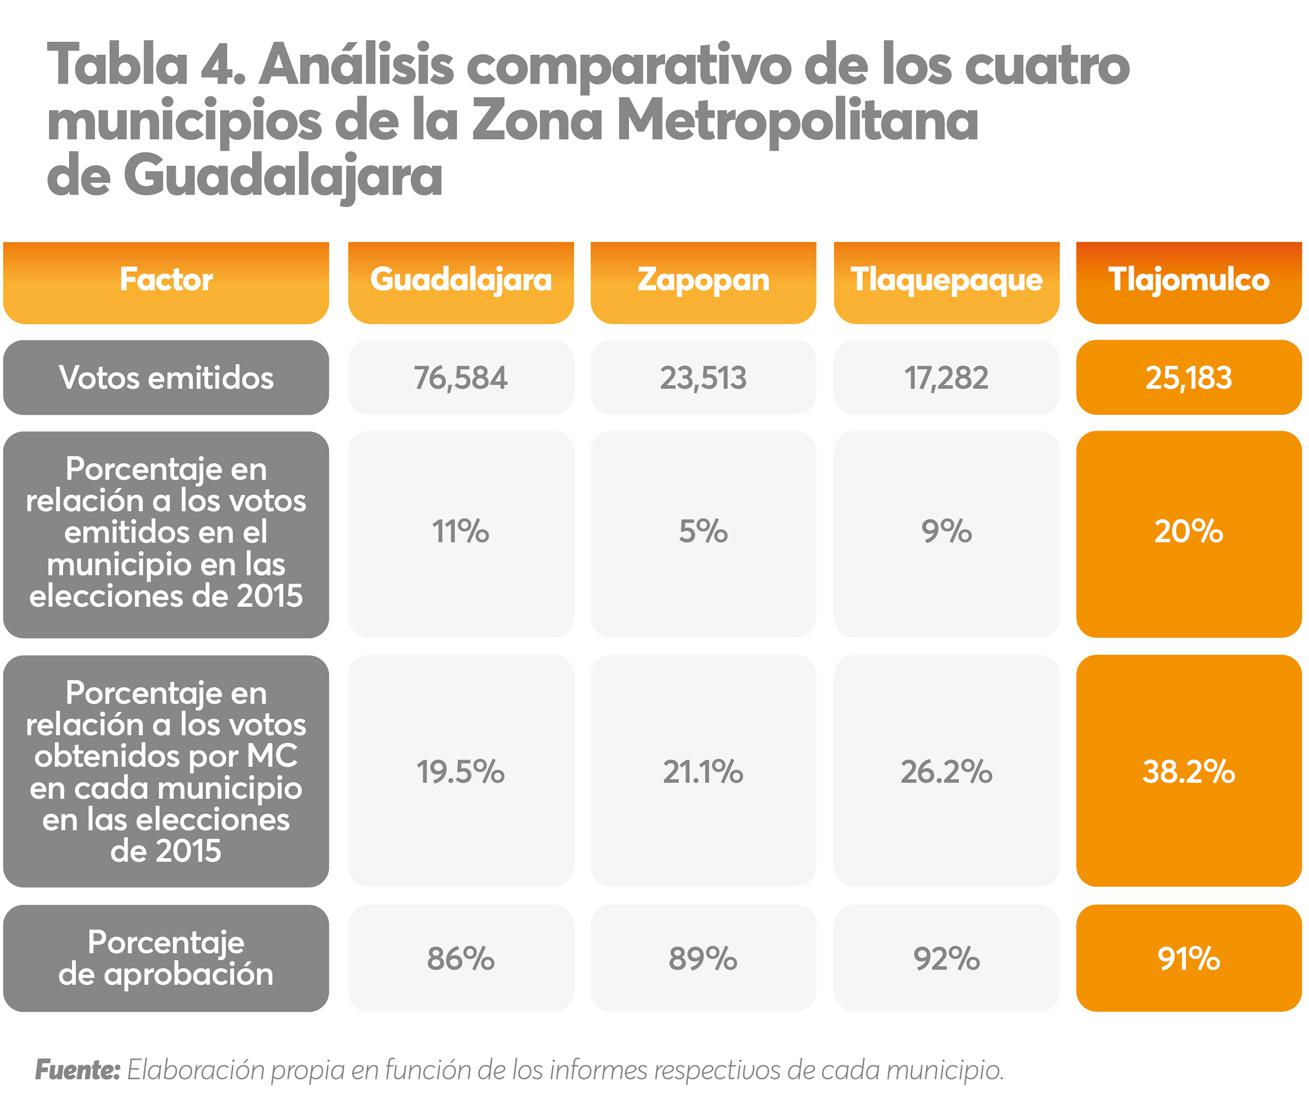 Analisis comparativo de los cuatro municipios de la zona metropolitana de Guadalajara